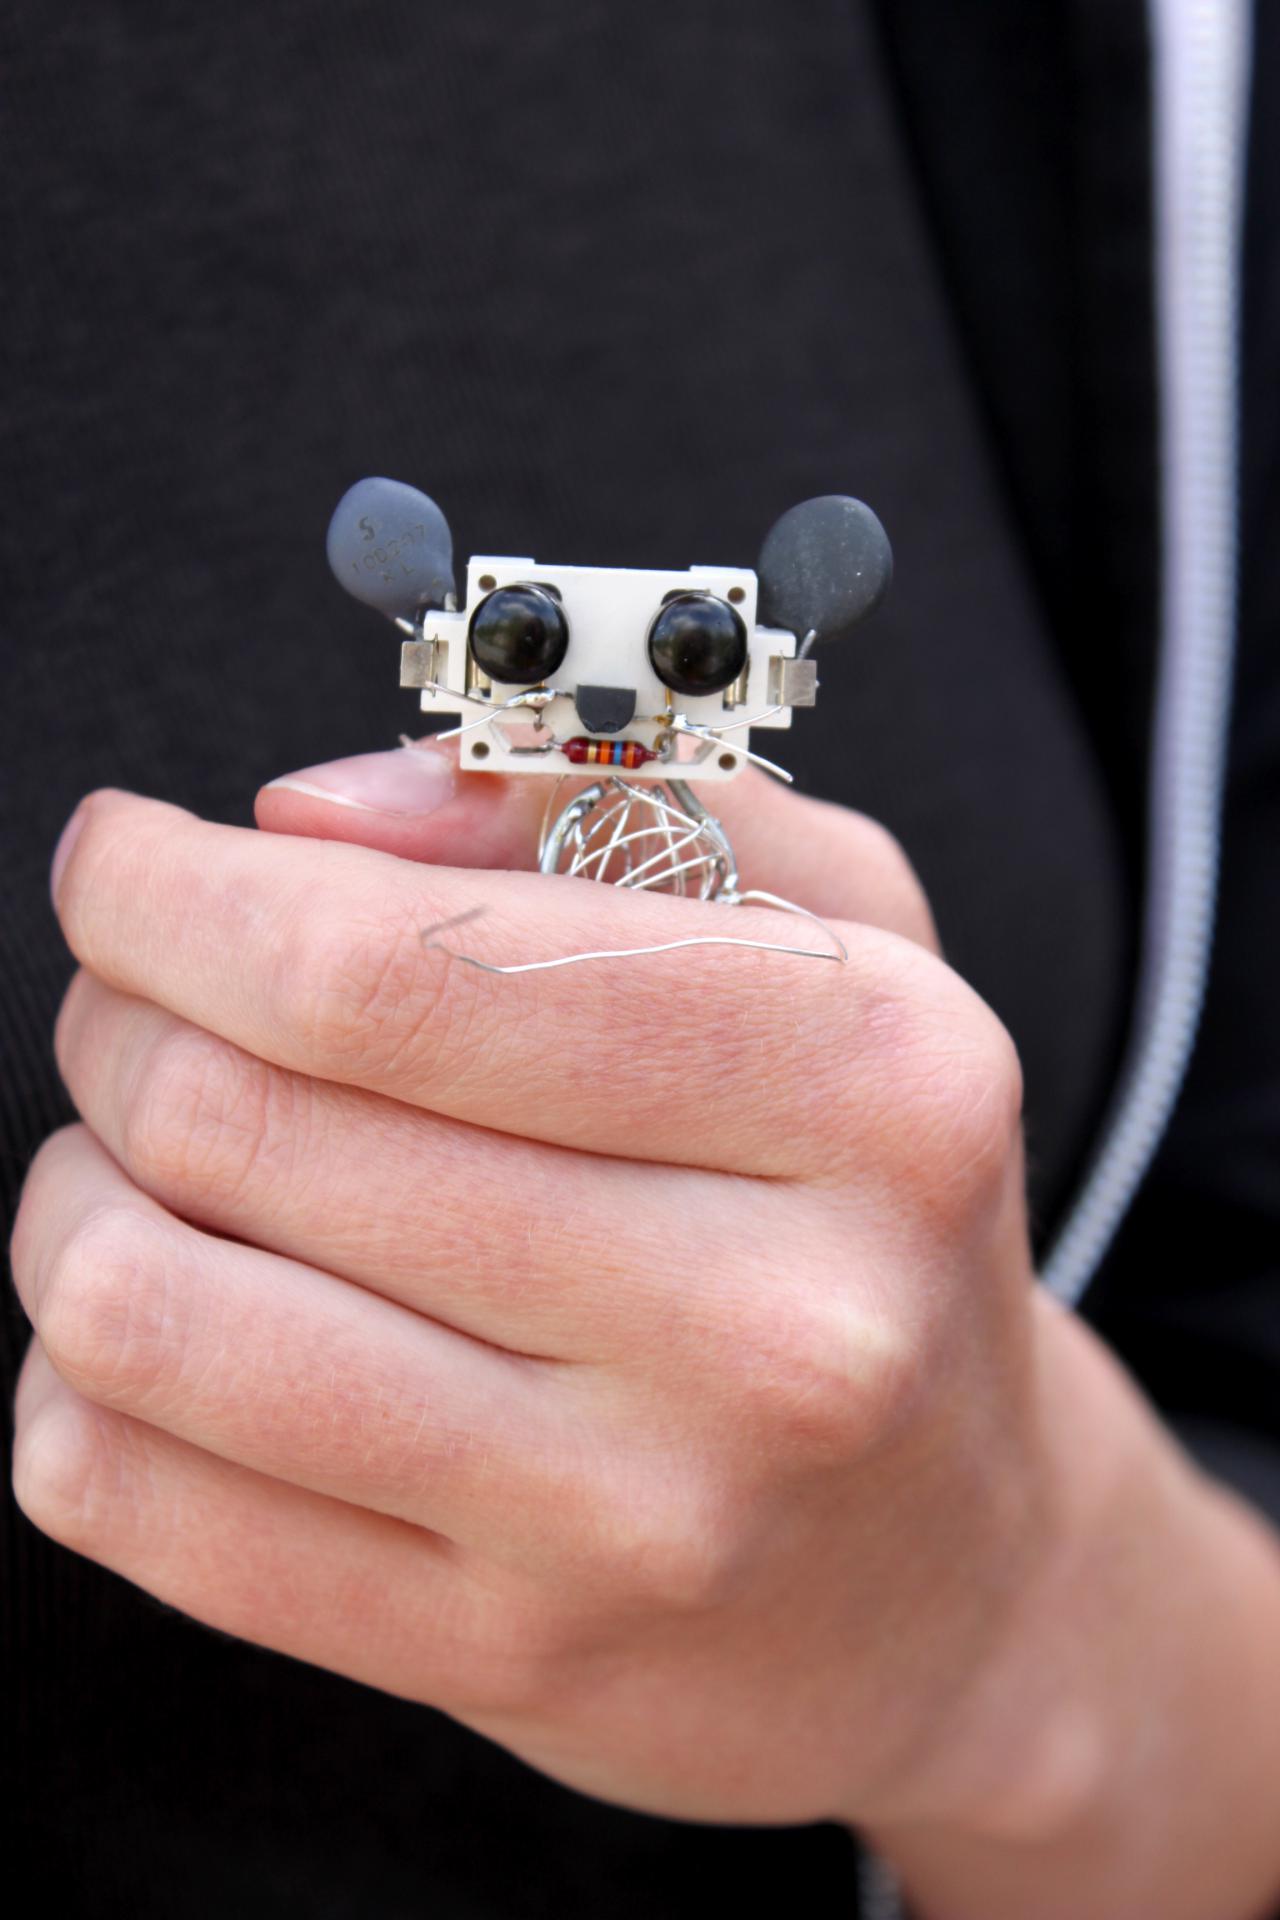 Eine Hand hält eine Maus aus Elektrobauteilen im Rahmen einer Veranstaltung der Kulturakademie.